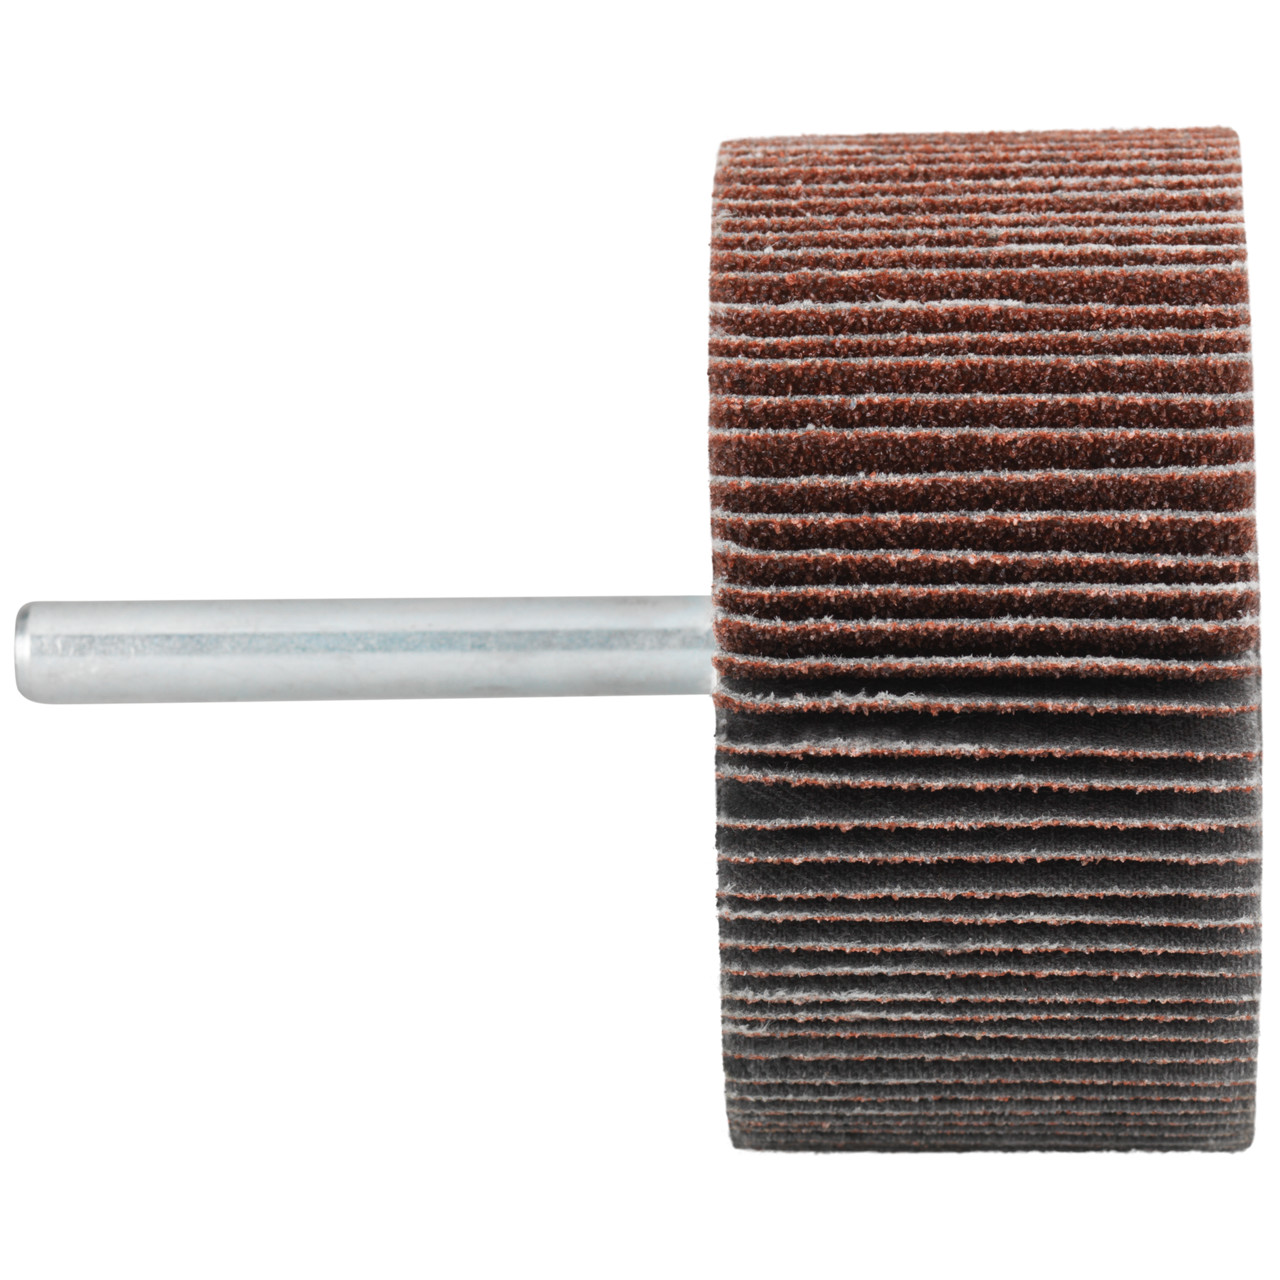 Tyrolit A-P01 C X Pennen DxD 60x20 Voor staal, roestvast staal en non-ferrometalen, P180, vorm: 52LA, Art. 433039